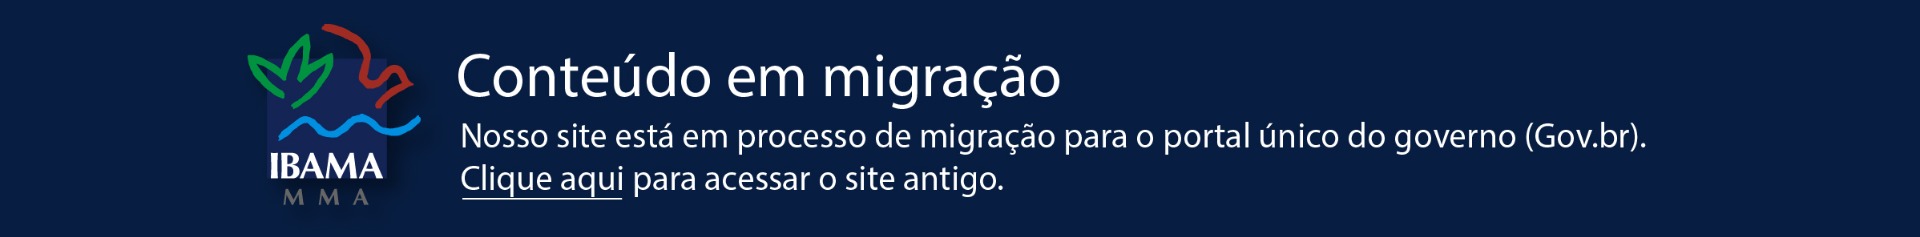 2020-05-21-banner-migracao-2.jpg